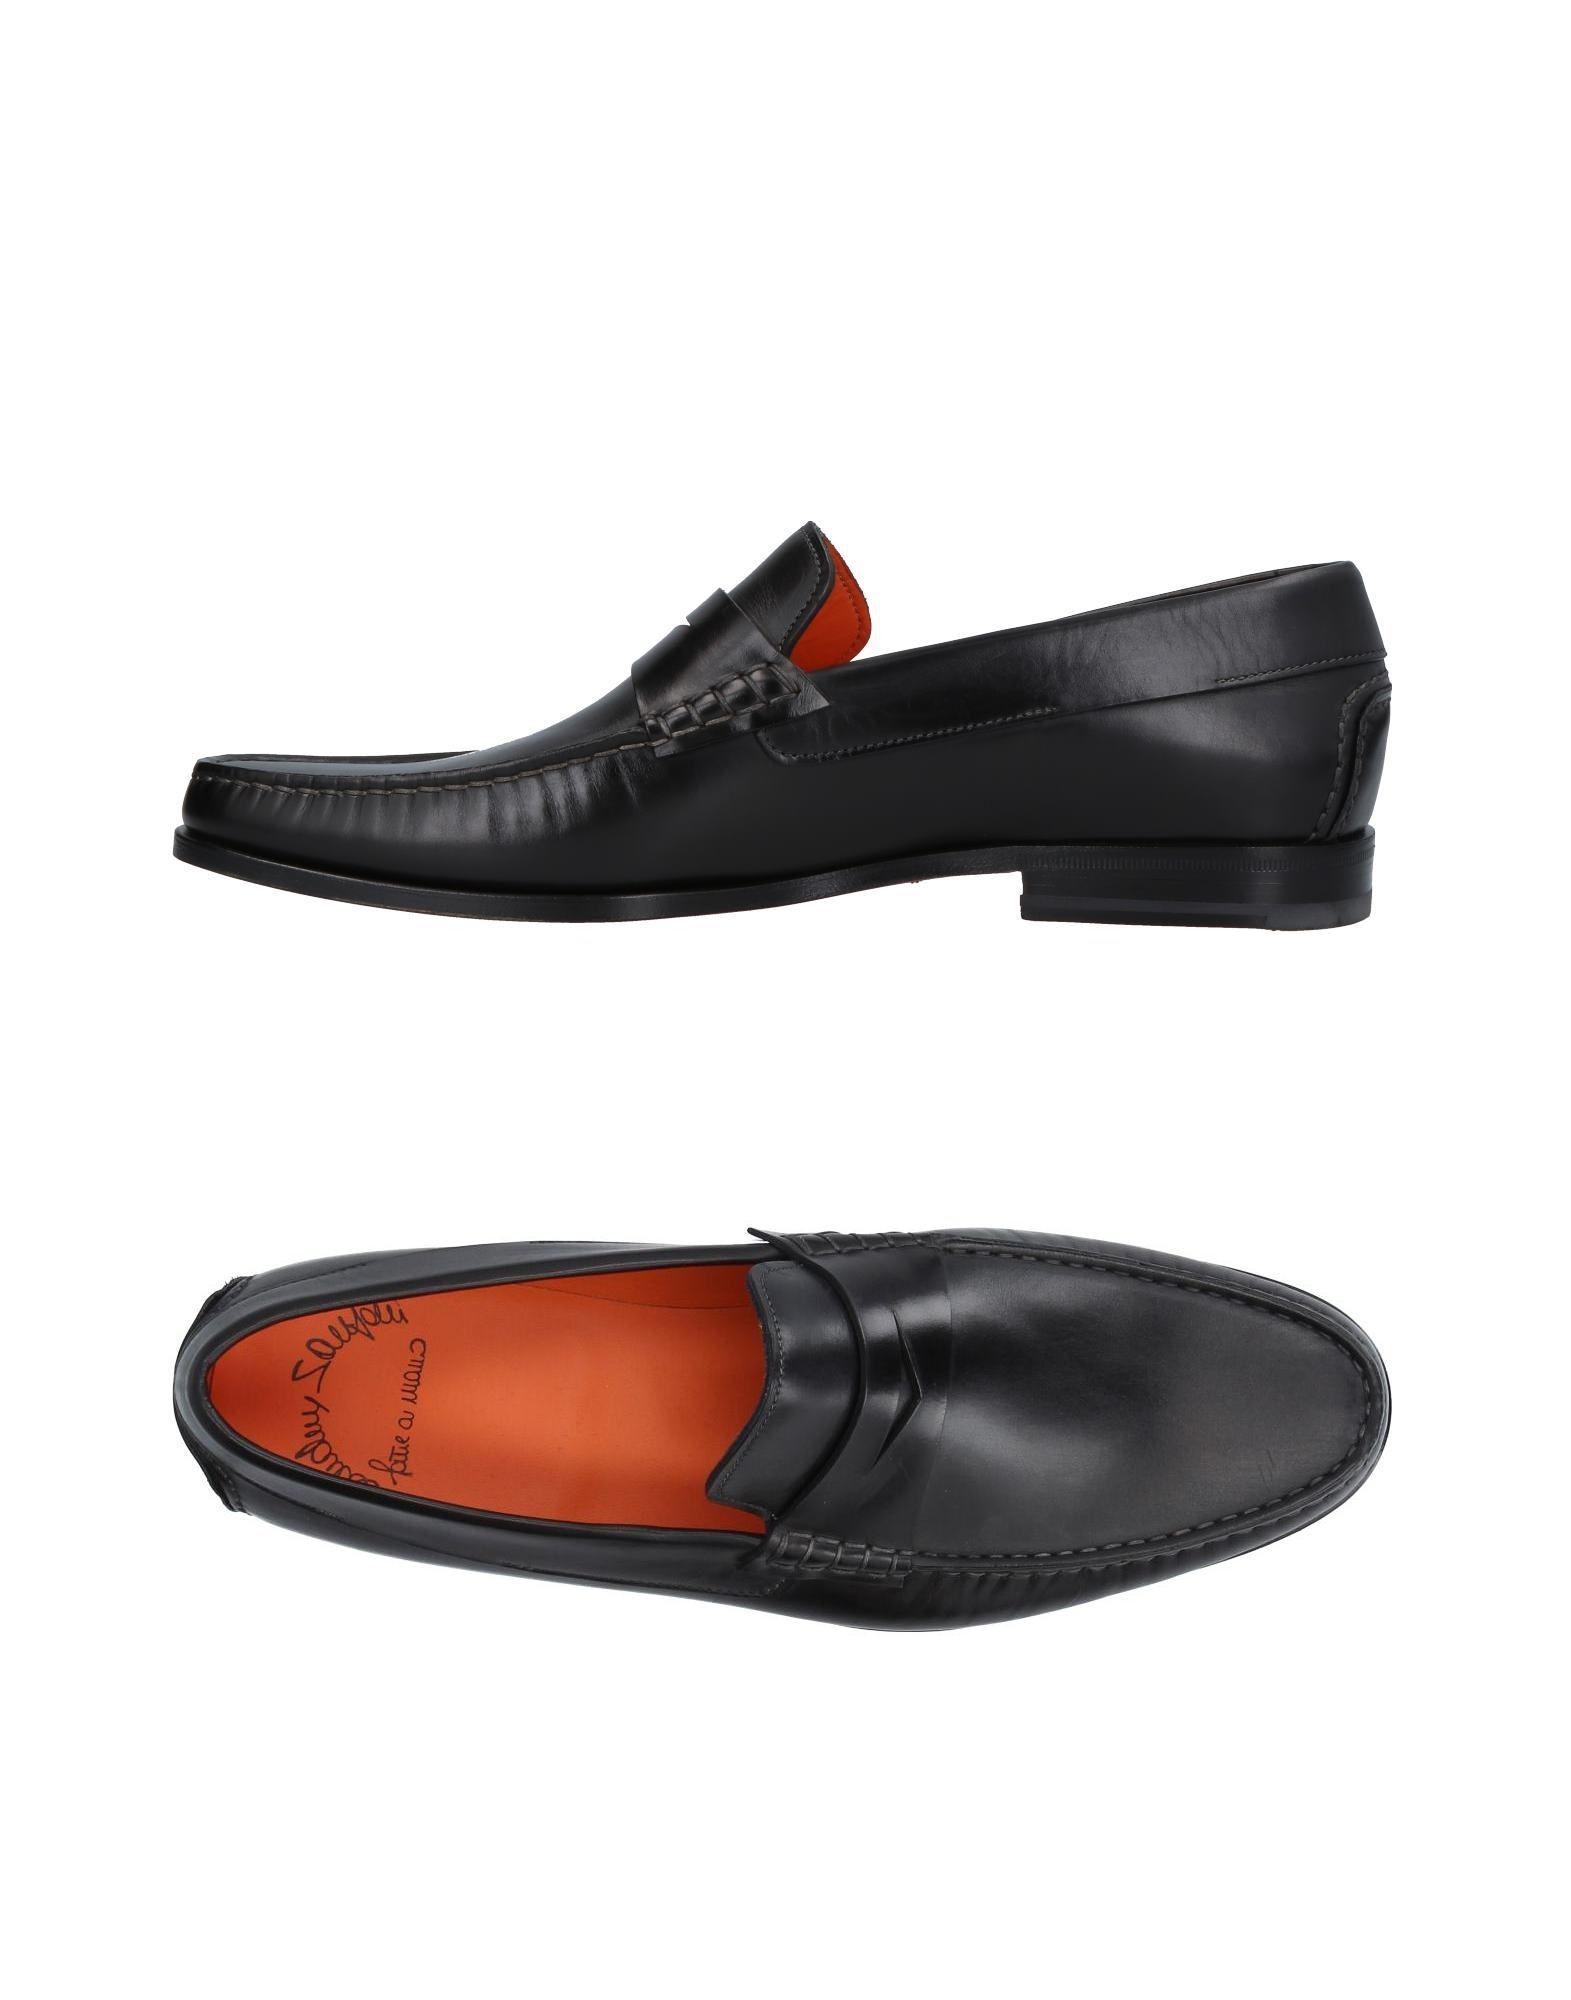 Santoni Leather Loafer in Black for Men - Lyst